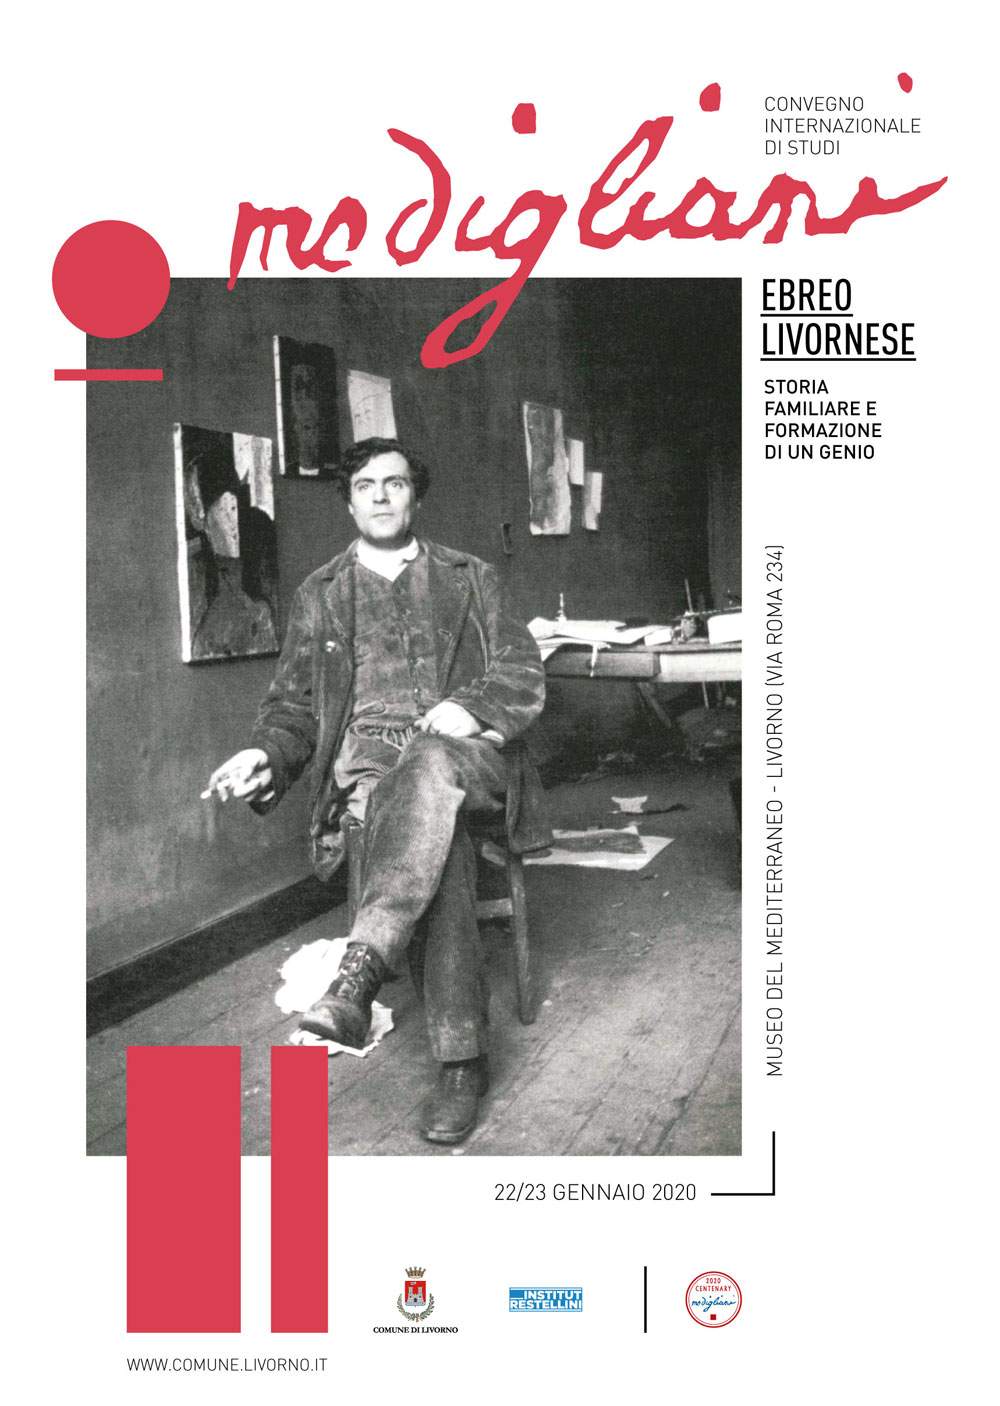 Conférence internationale à Livourne sur l'histoire de Modigliani en tant que Juif de Livourne